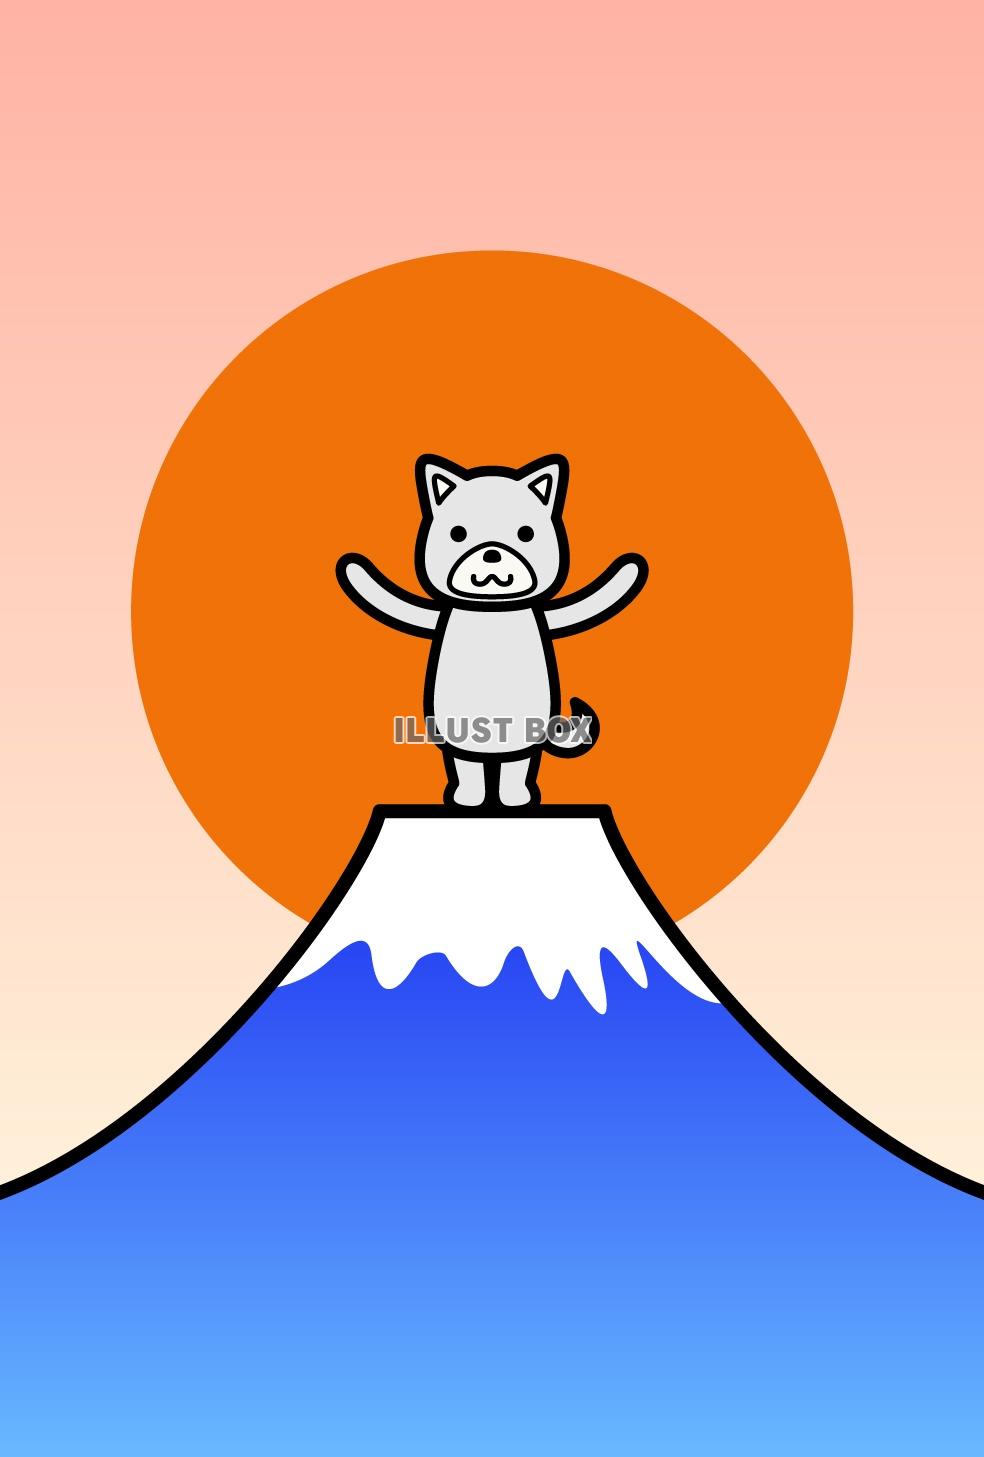 無料イラスト 18年 戌年 年賀状のイラスト 犬と富士山6